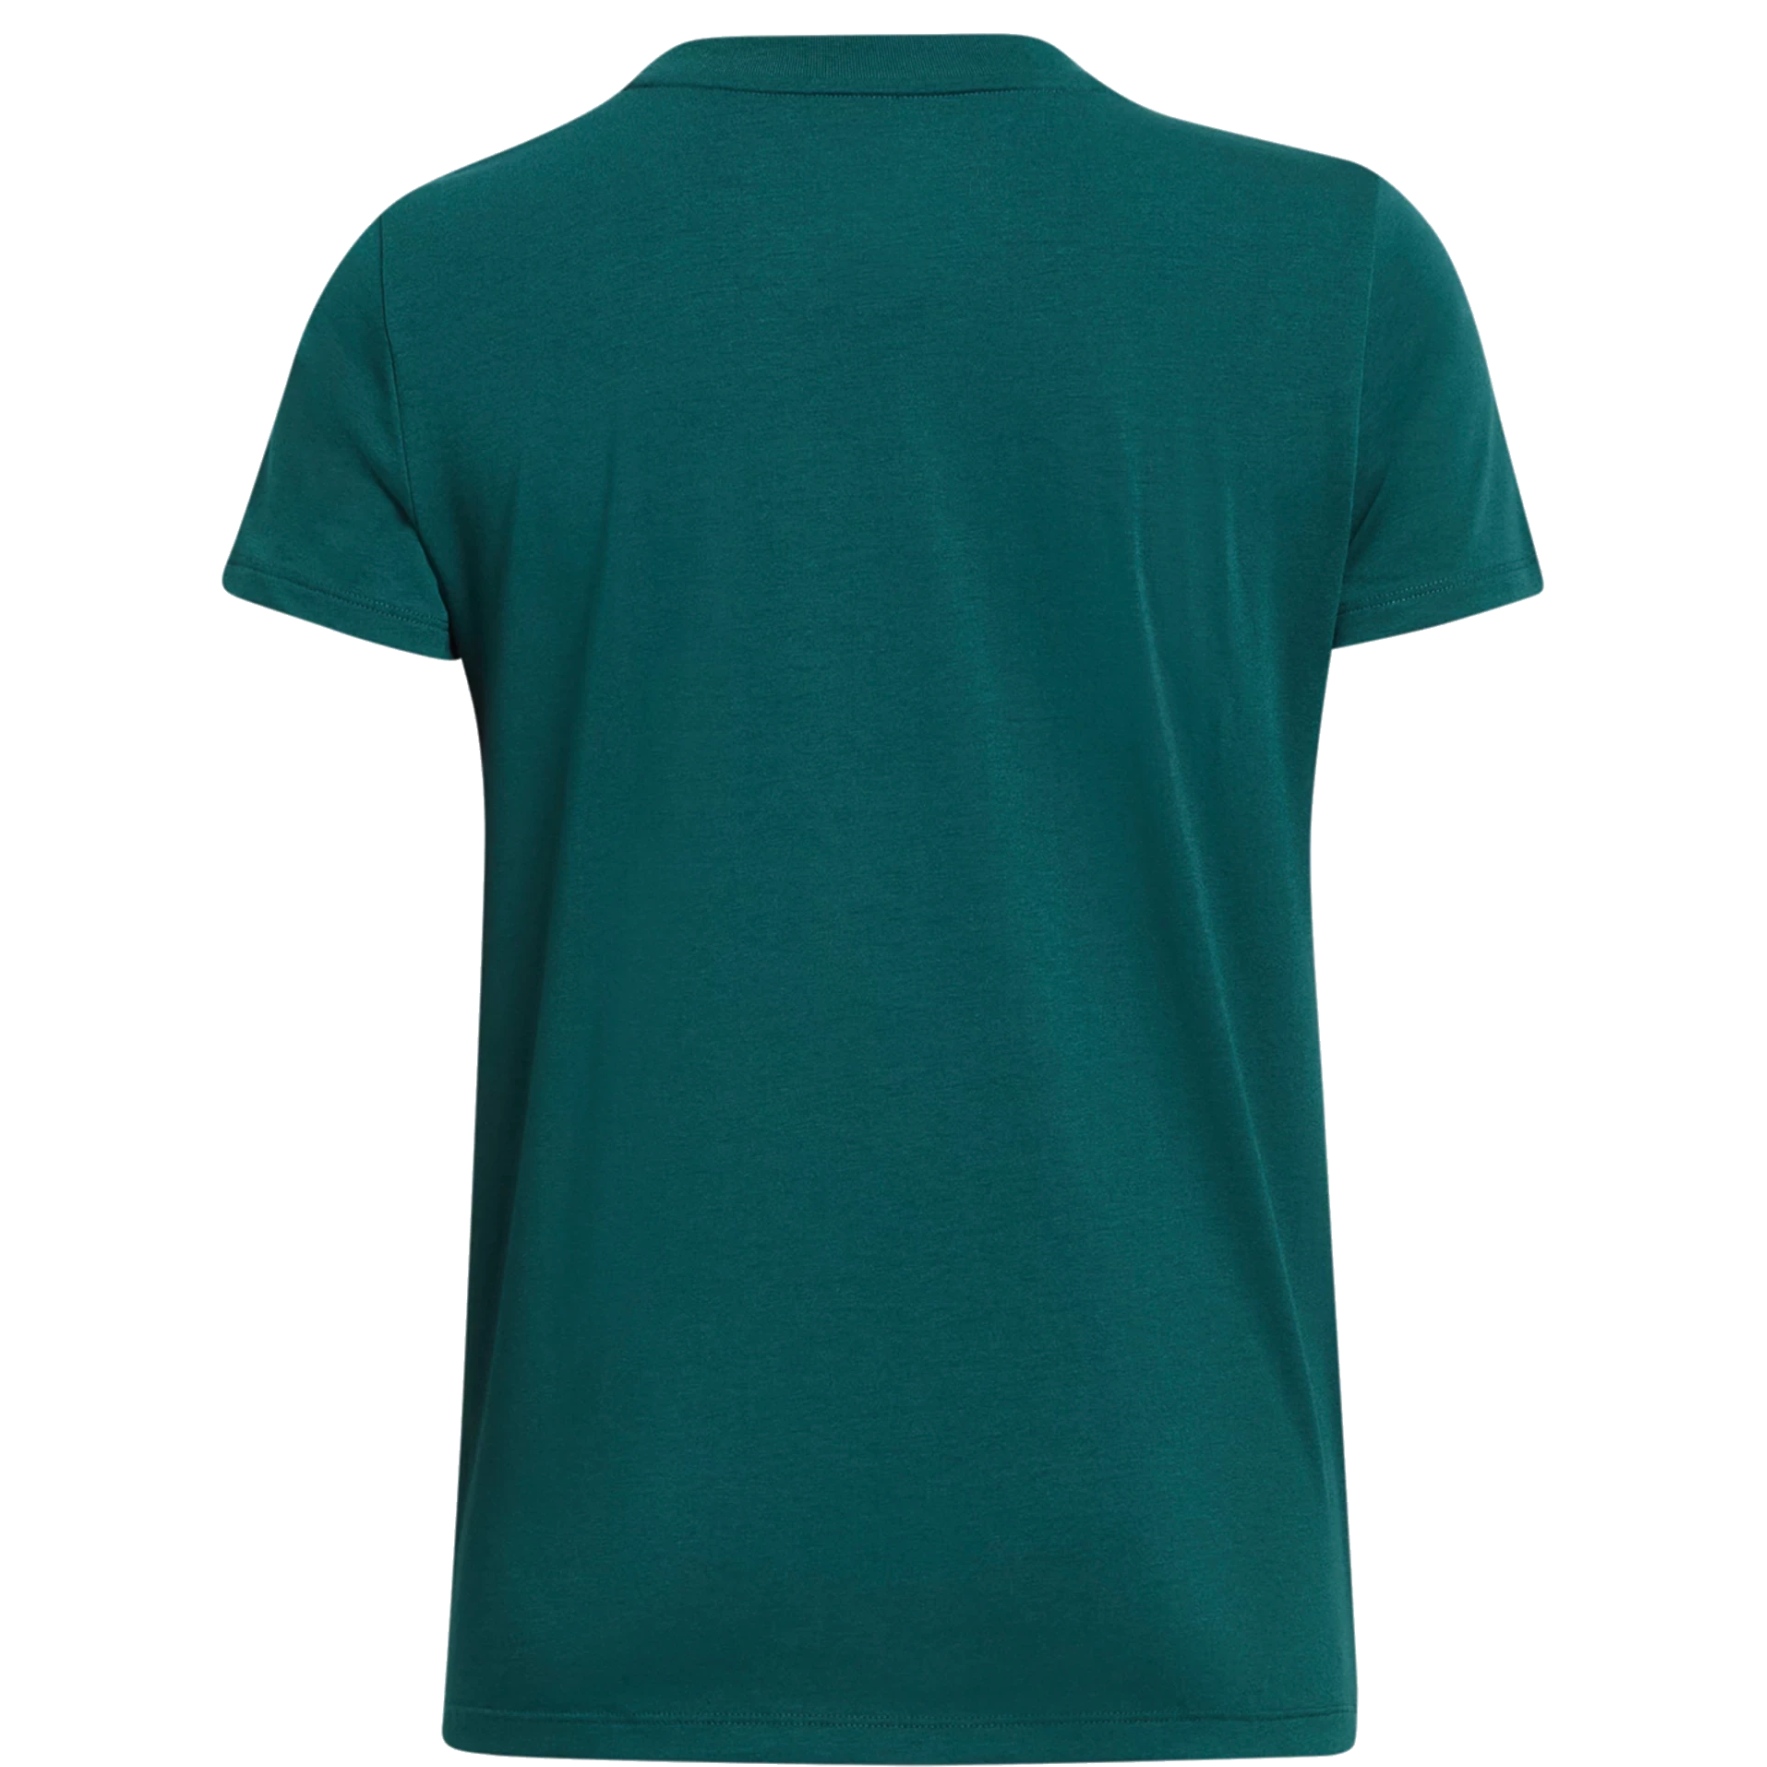 Under Armour UA Tech™ Twist Short Sleeve Shirt Women - Hydro Teal